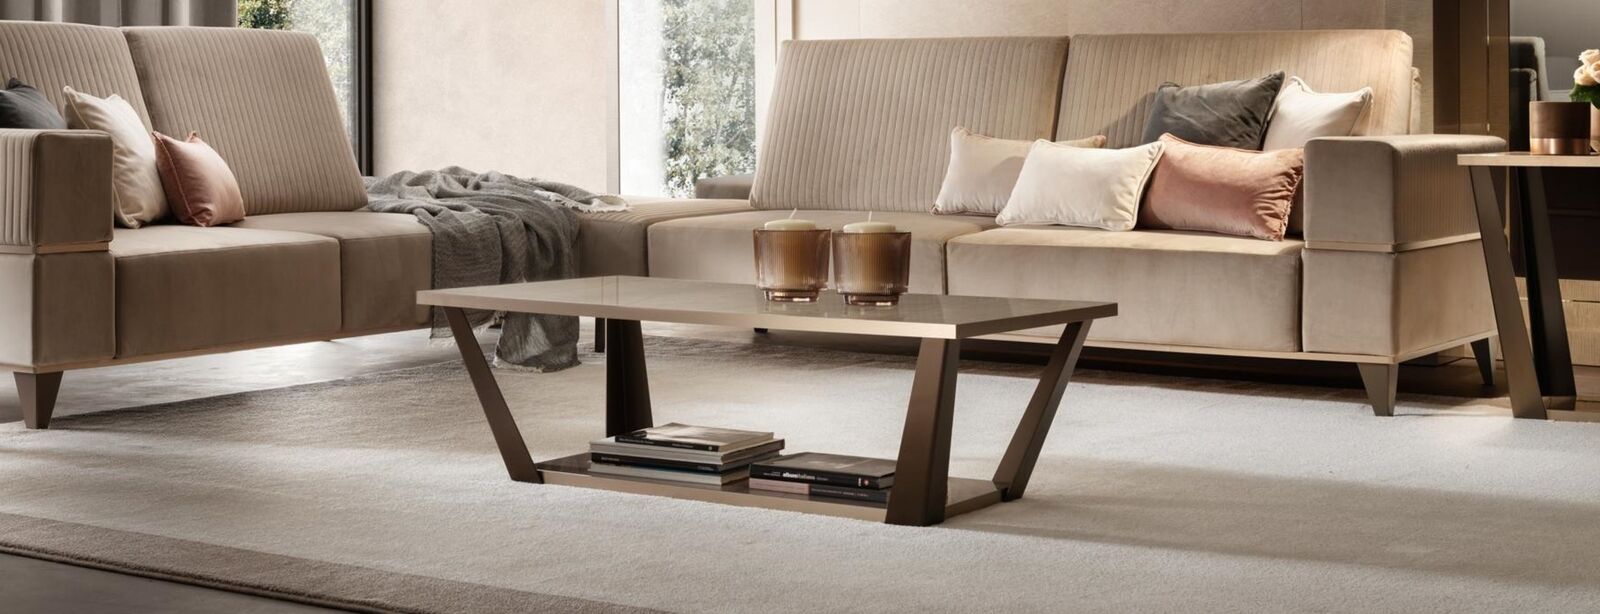 Designer Couchtisch Beistelltisch Sofa Wohnzimmer Tisch arredoclassic Tische